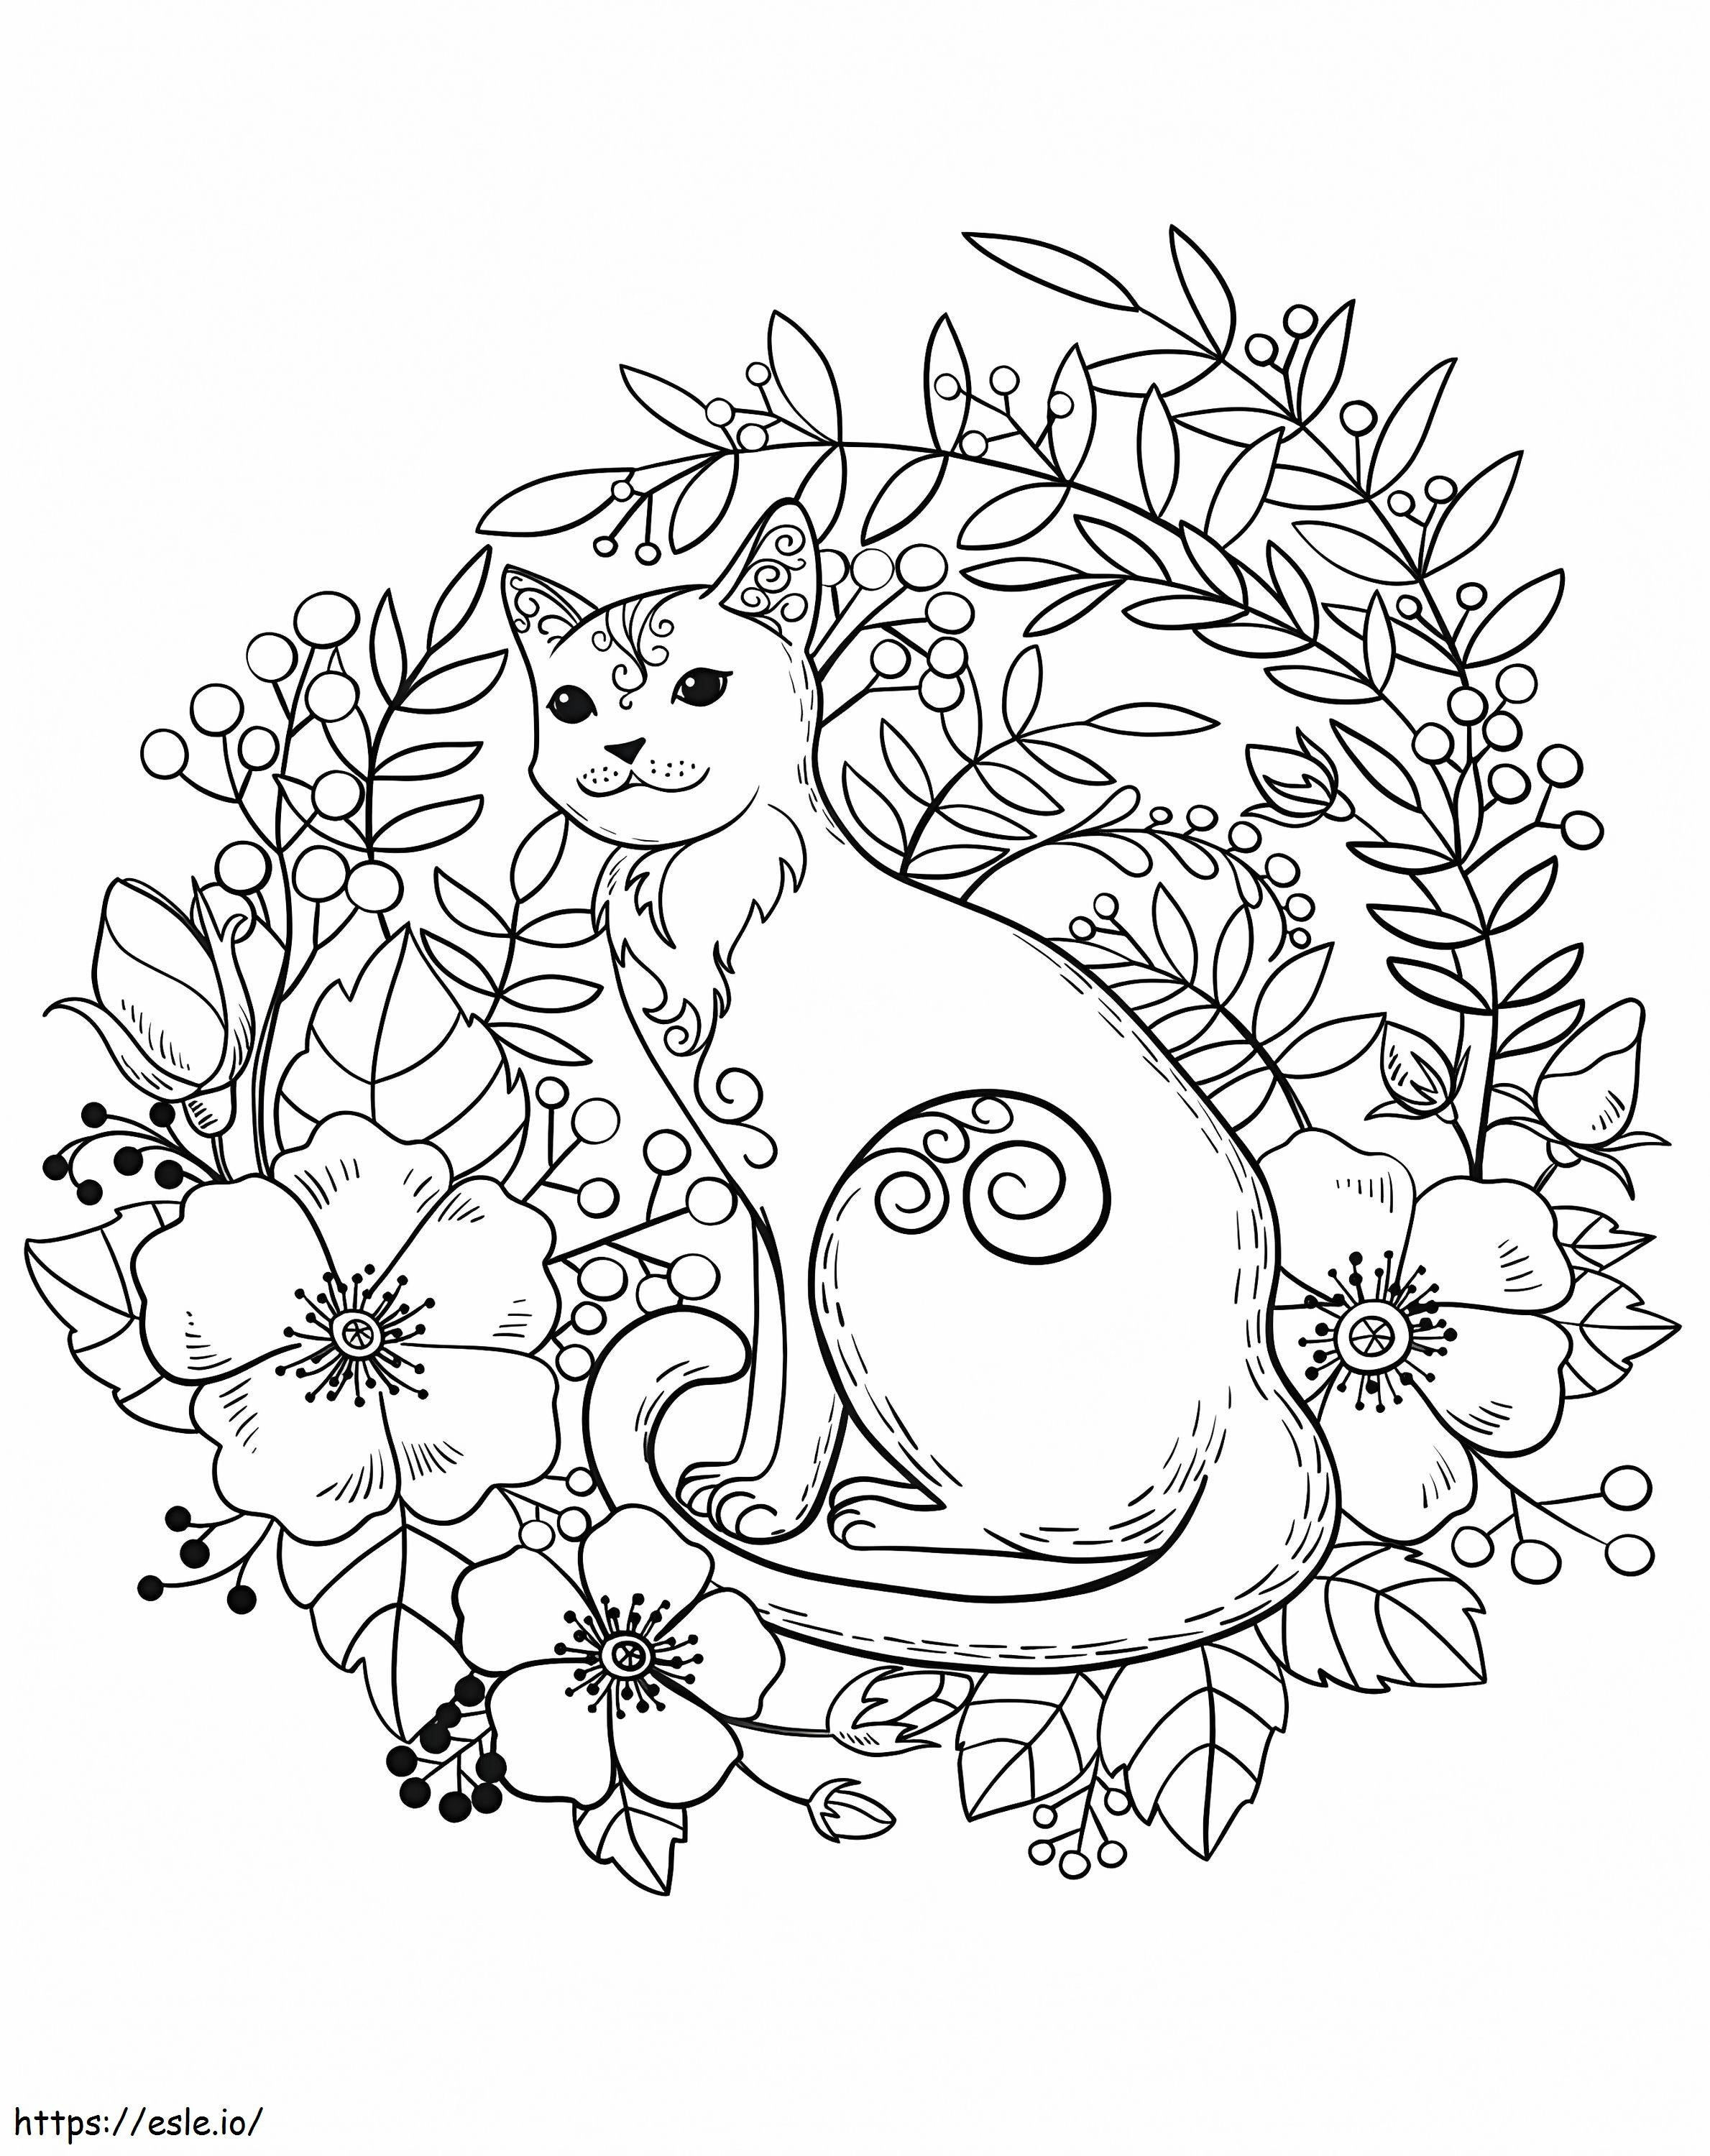 1560155505 Katze in Blumen A4 ausmalbilder